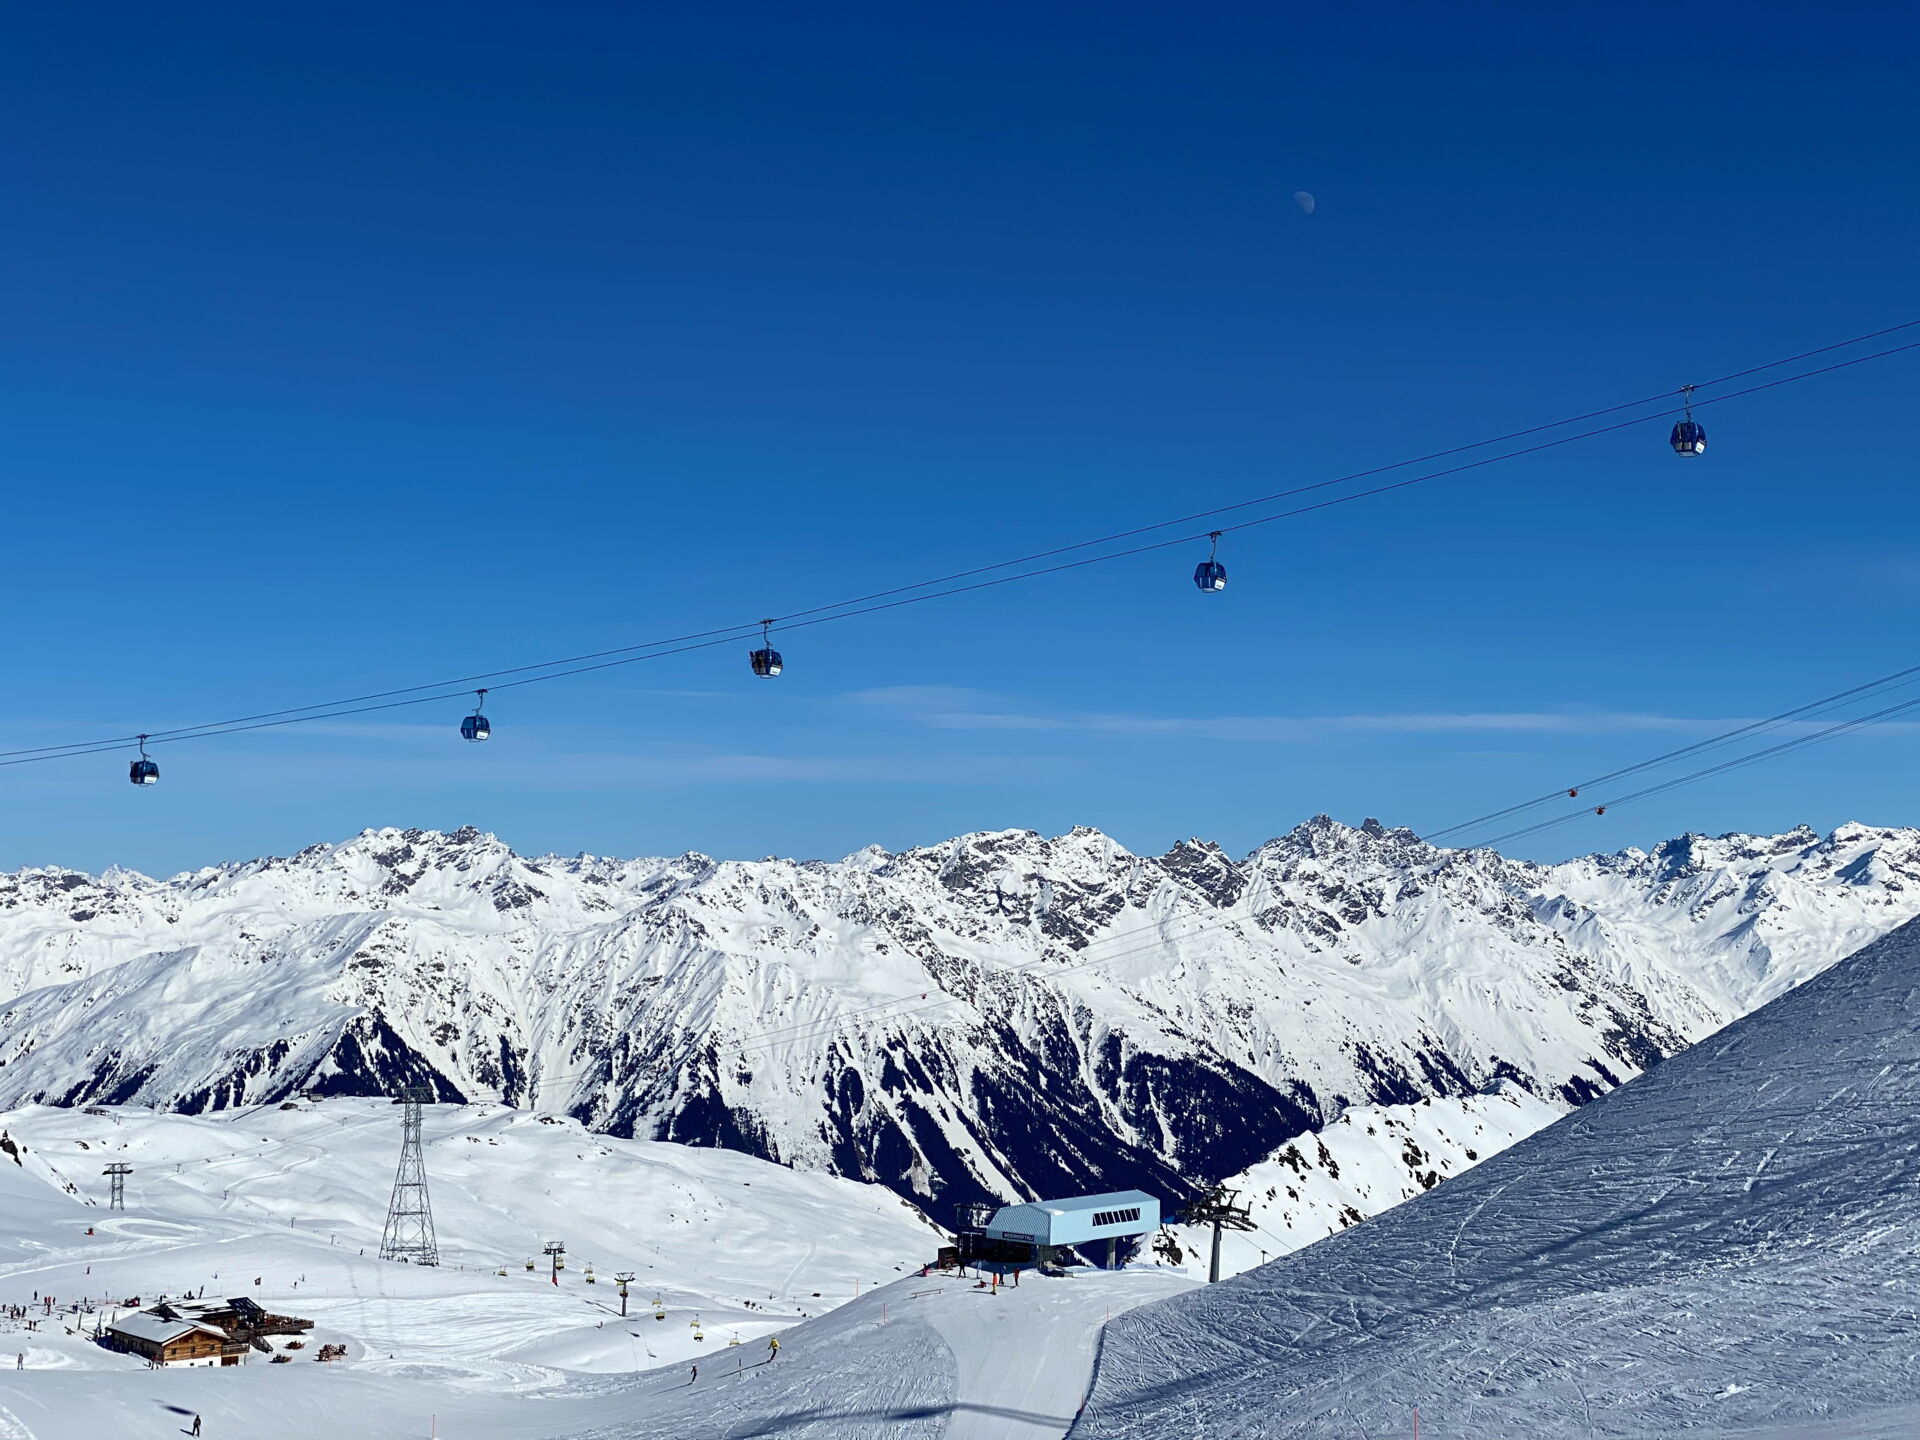 Davos Parsenn ski area view from Weissfluhjoch